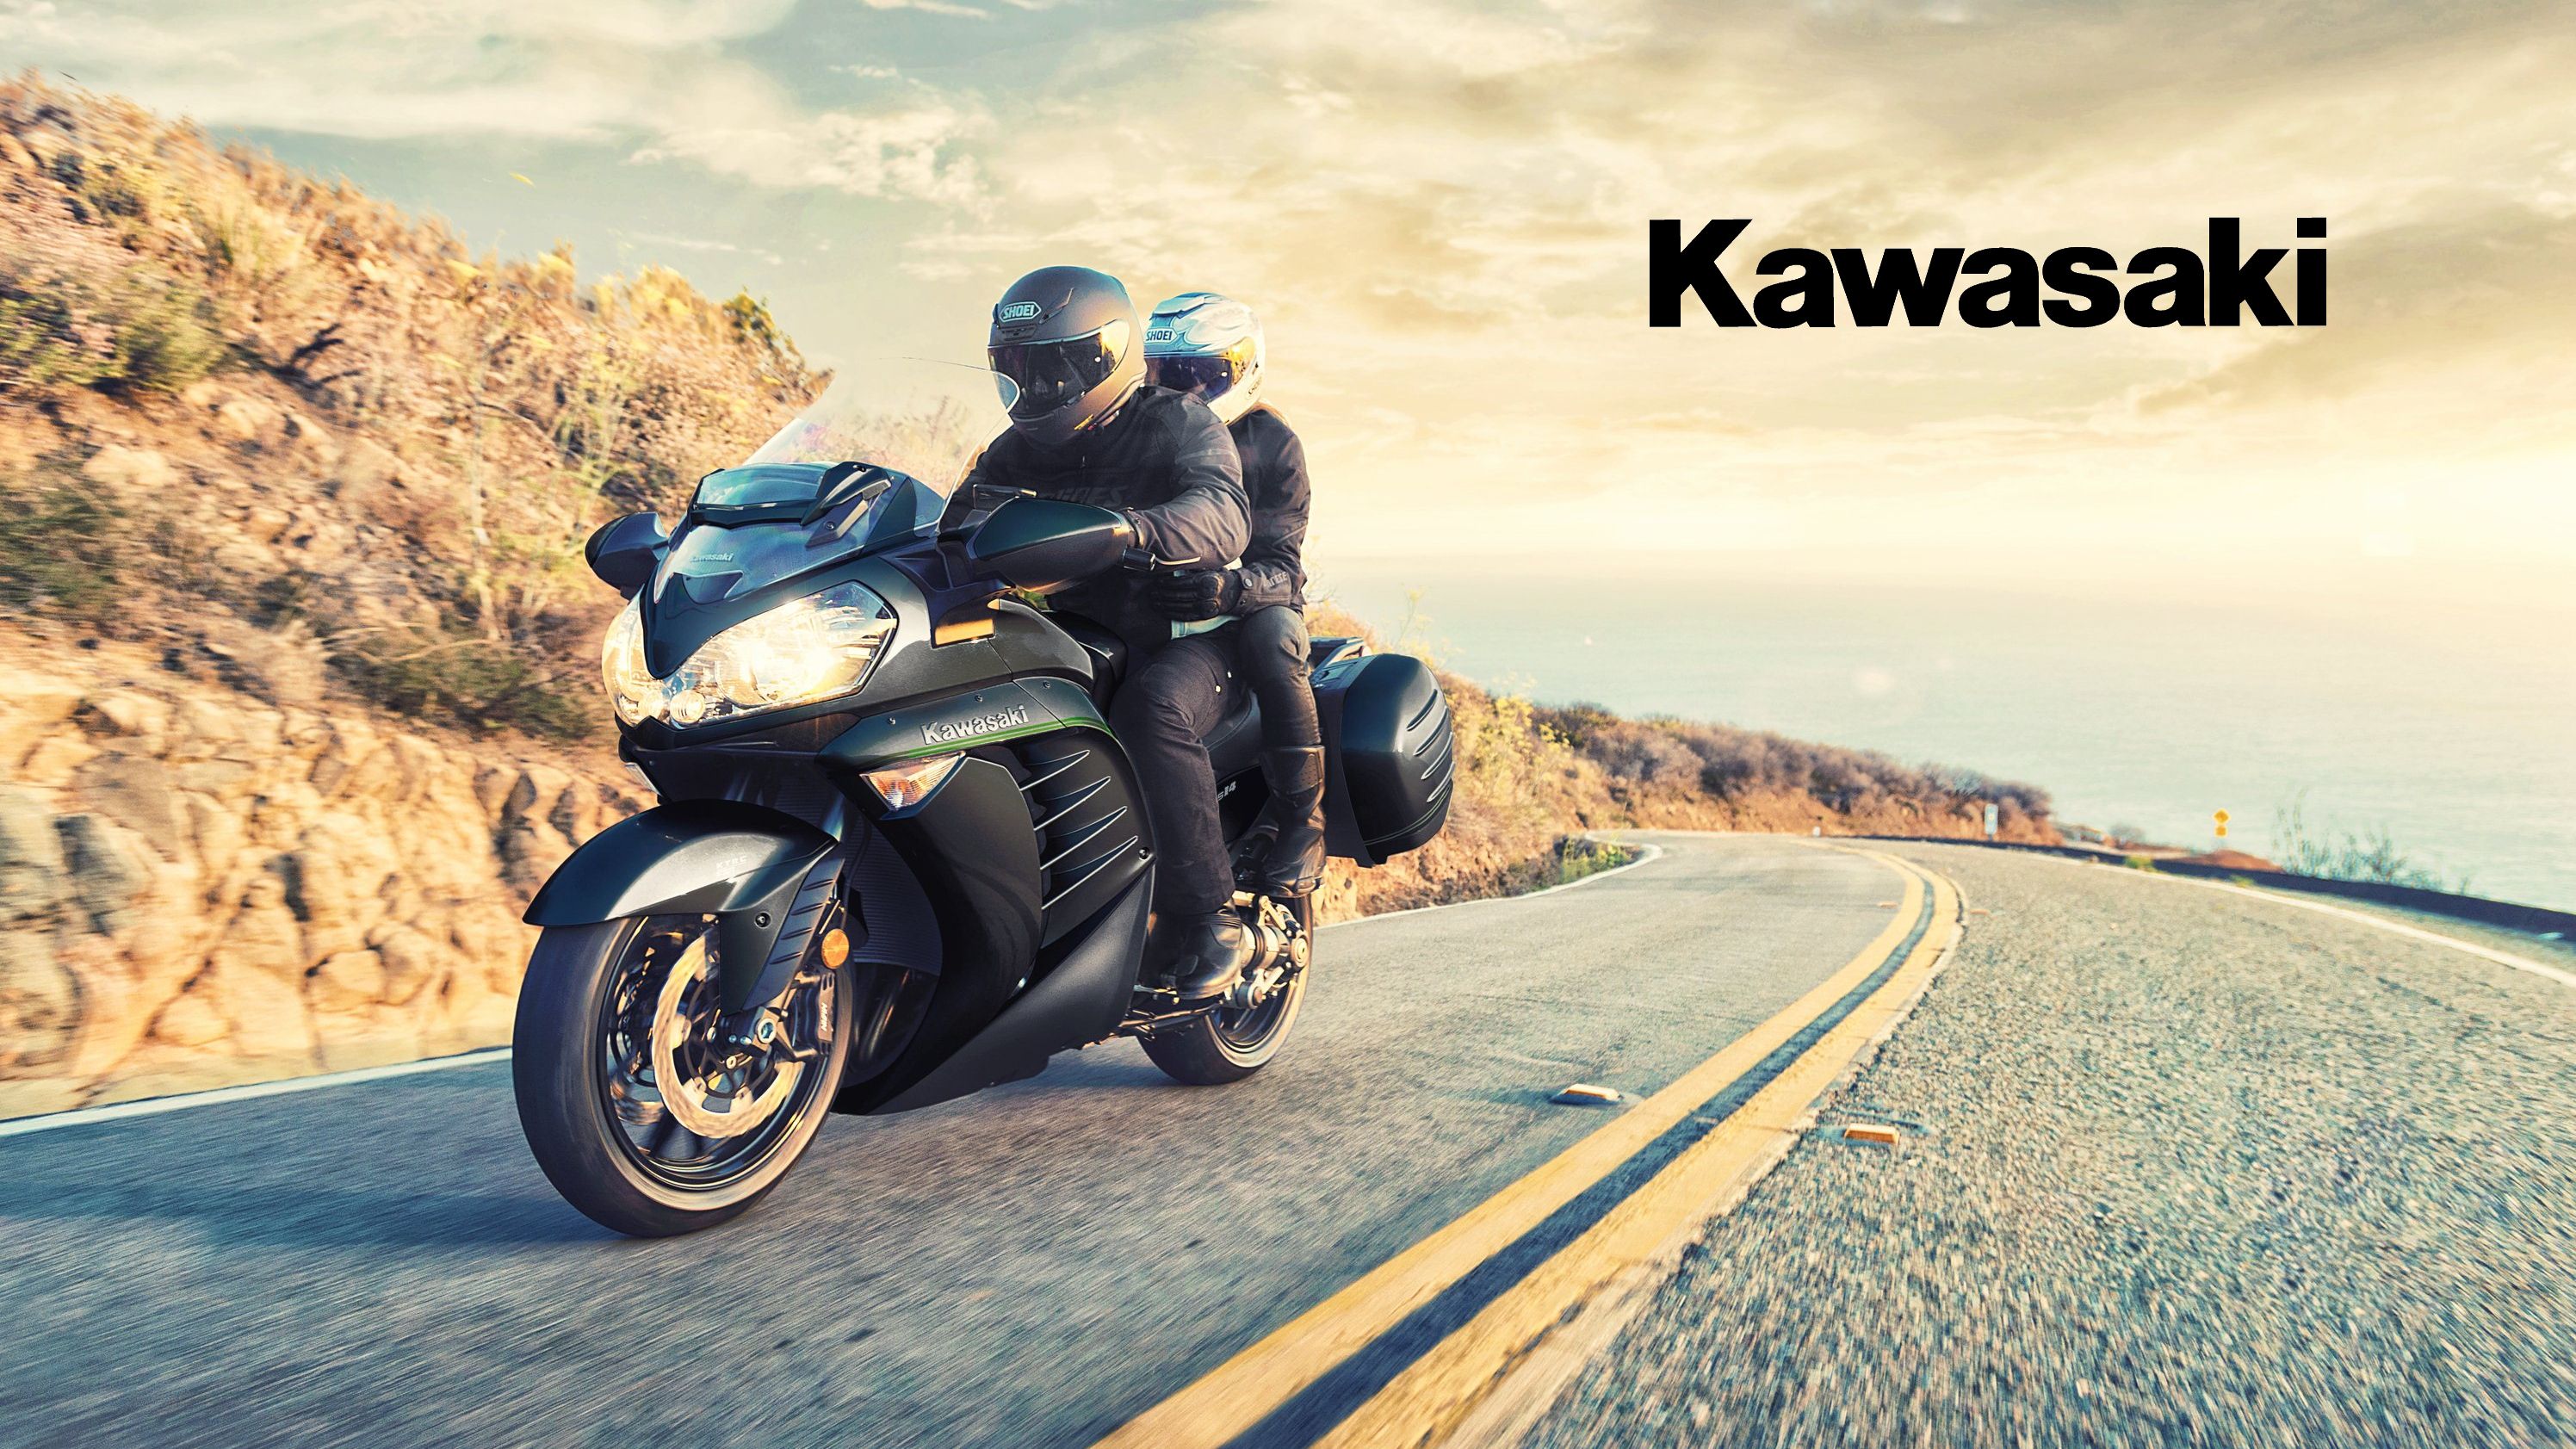 2015 - 2022 Kawasaki Concours 14 ABS